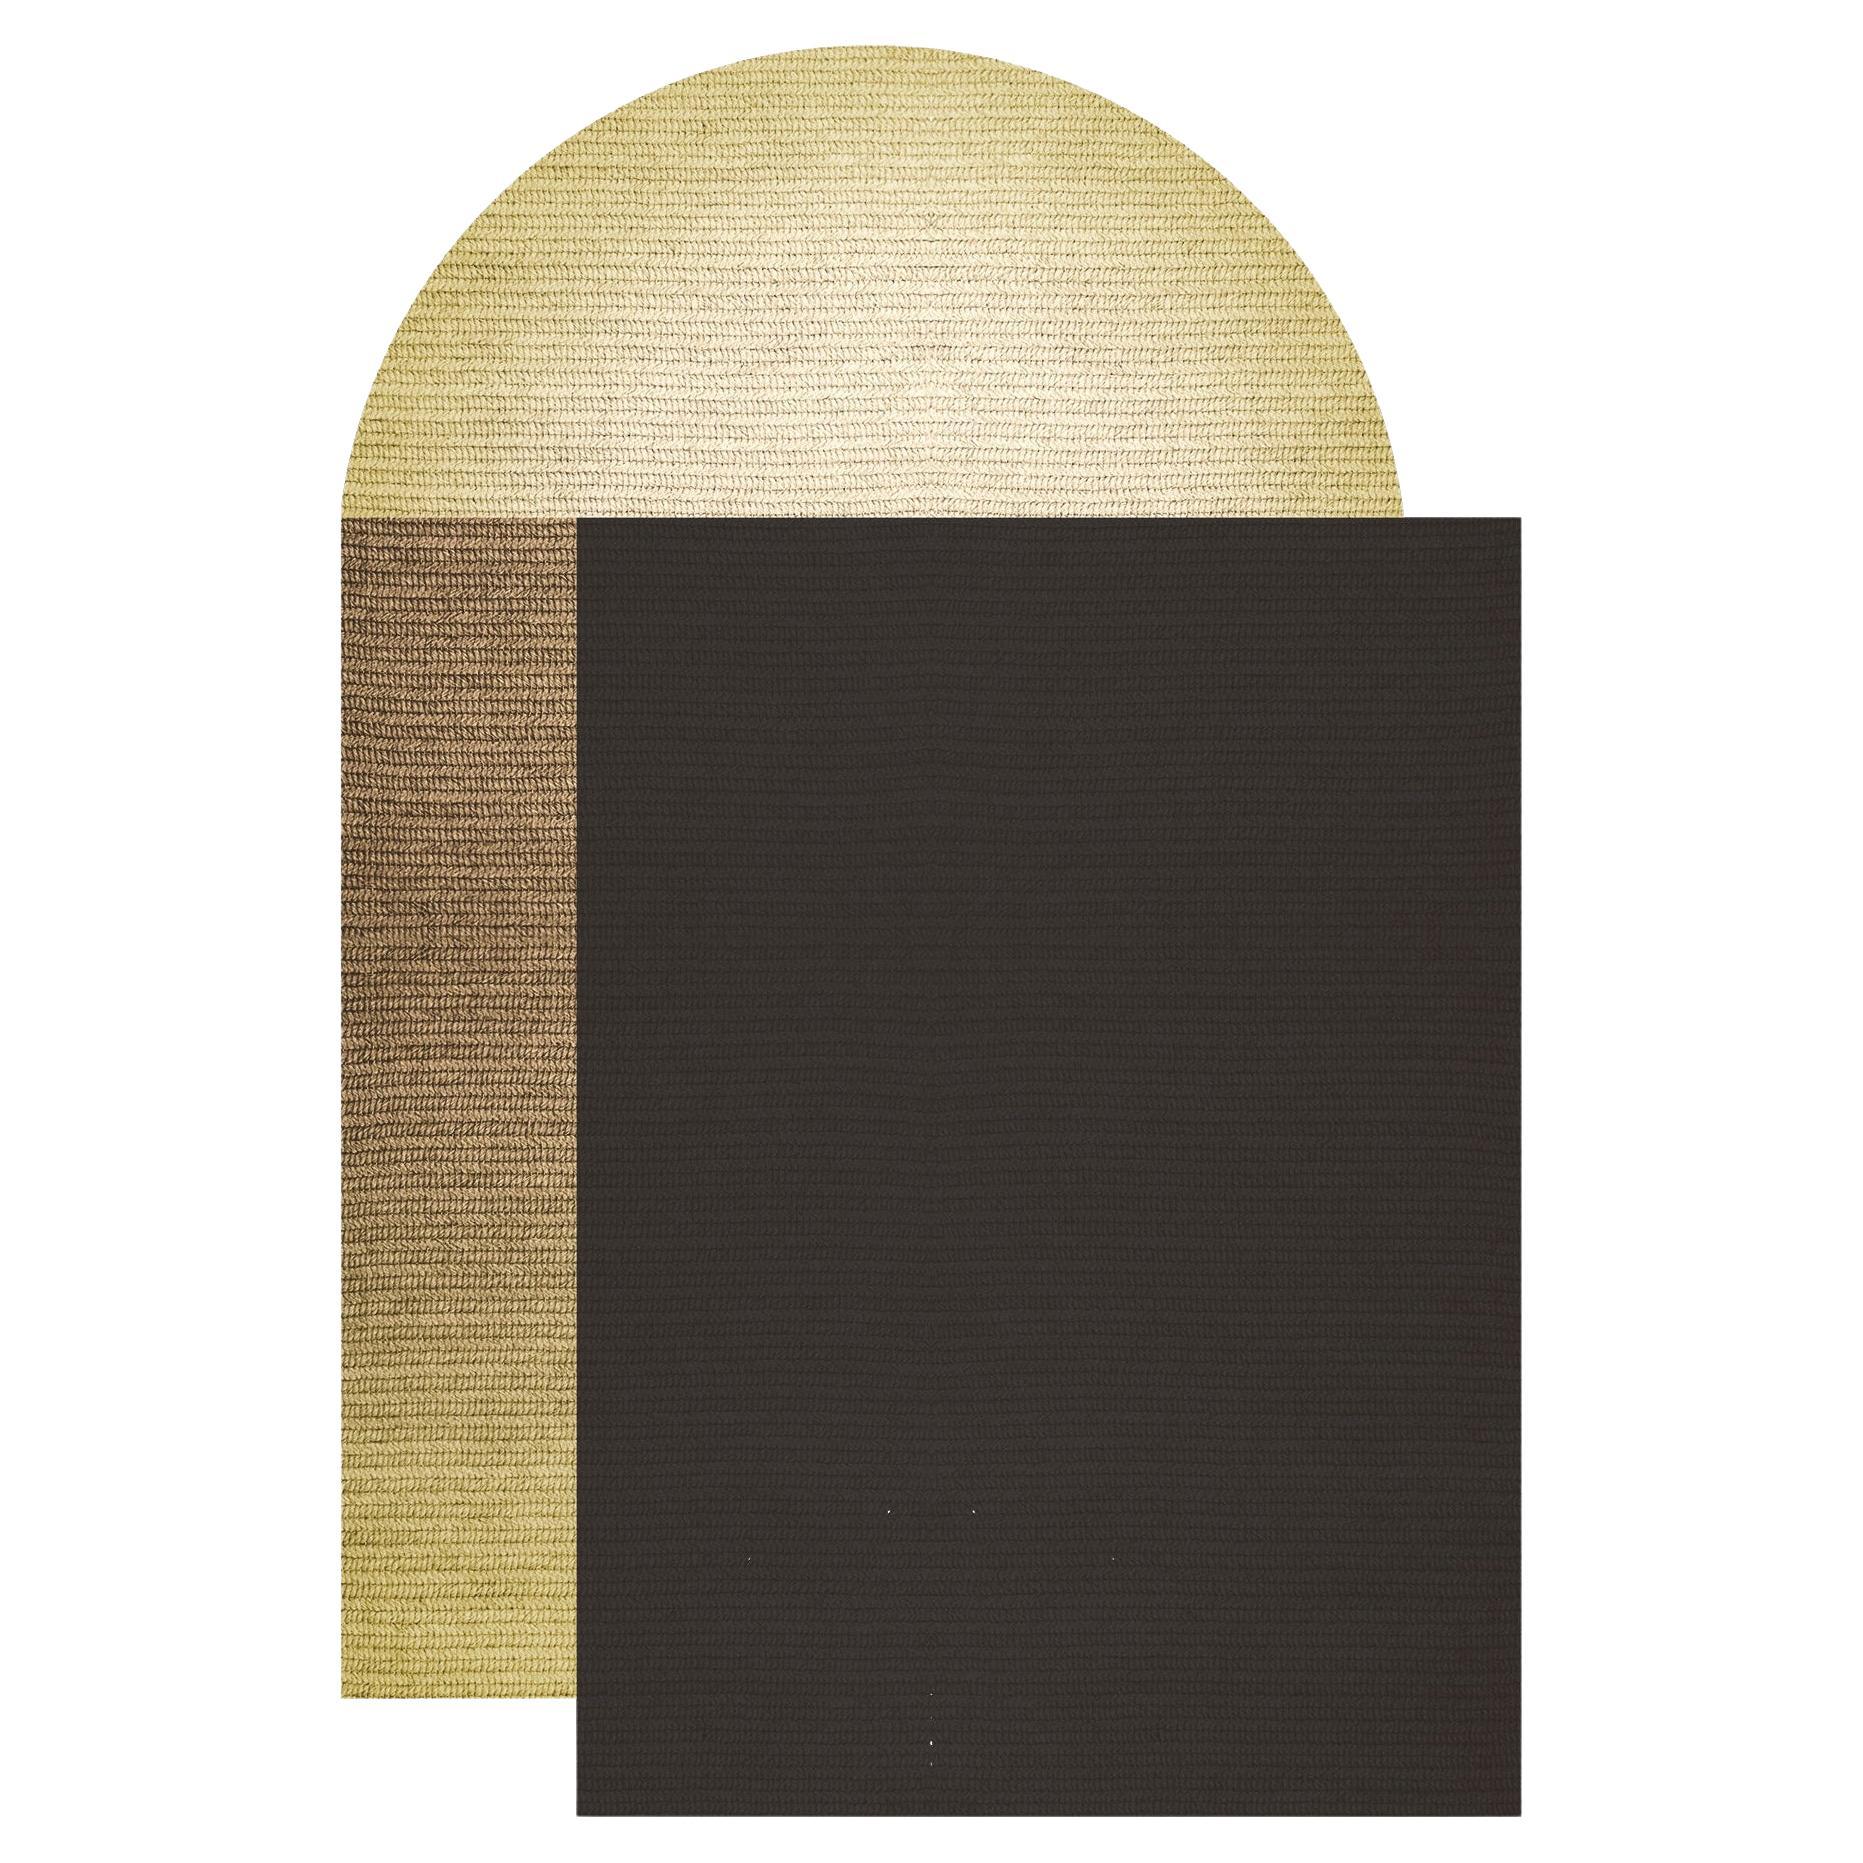 Tapis "Fade" en Abaca, couleur "Pampas", 160 x 240 cm, de Claire Vos pour Musett Design